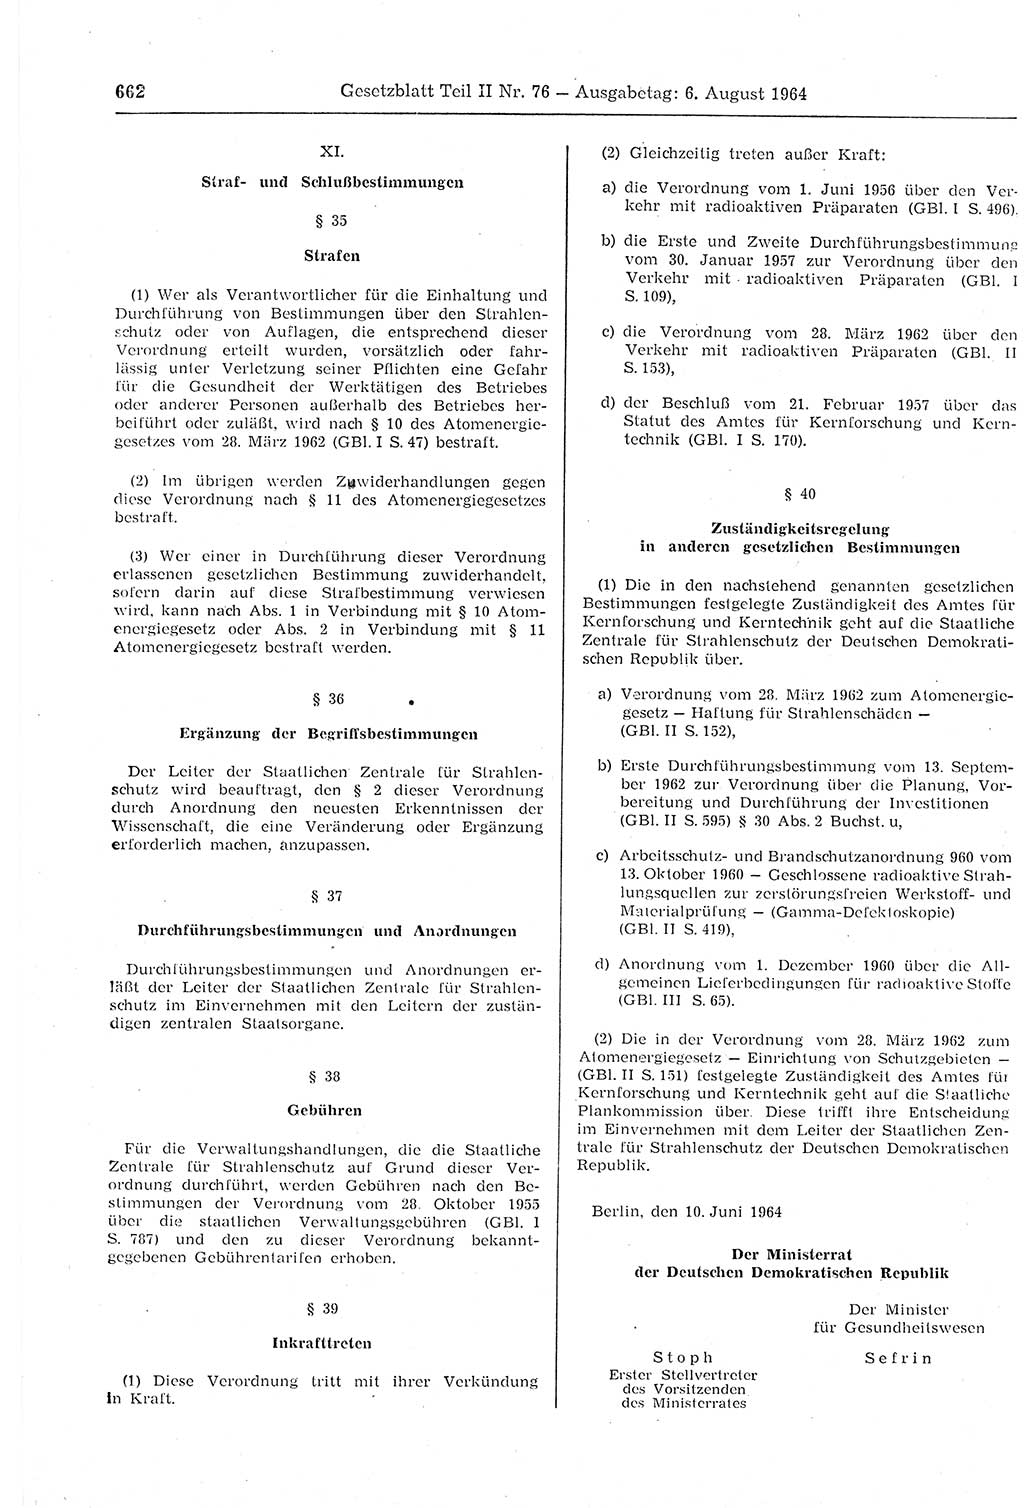 Gesetzblatt (GBl.) der Deutschen Demokratischen Republik (DDR) Teil ⅠⅠ 1964, Seite 662 (GBl. DDR ⅠⅠ 1964, S. 662)